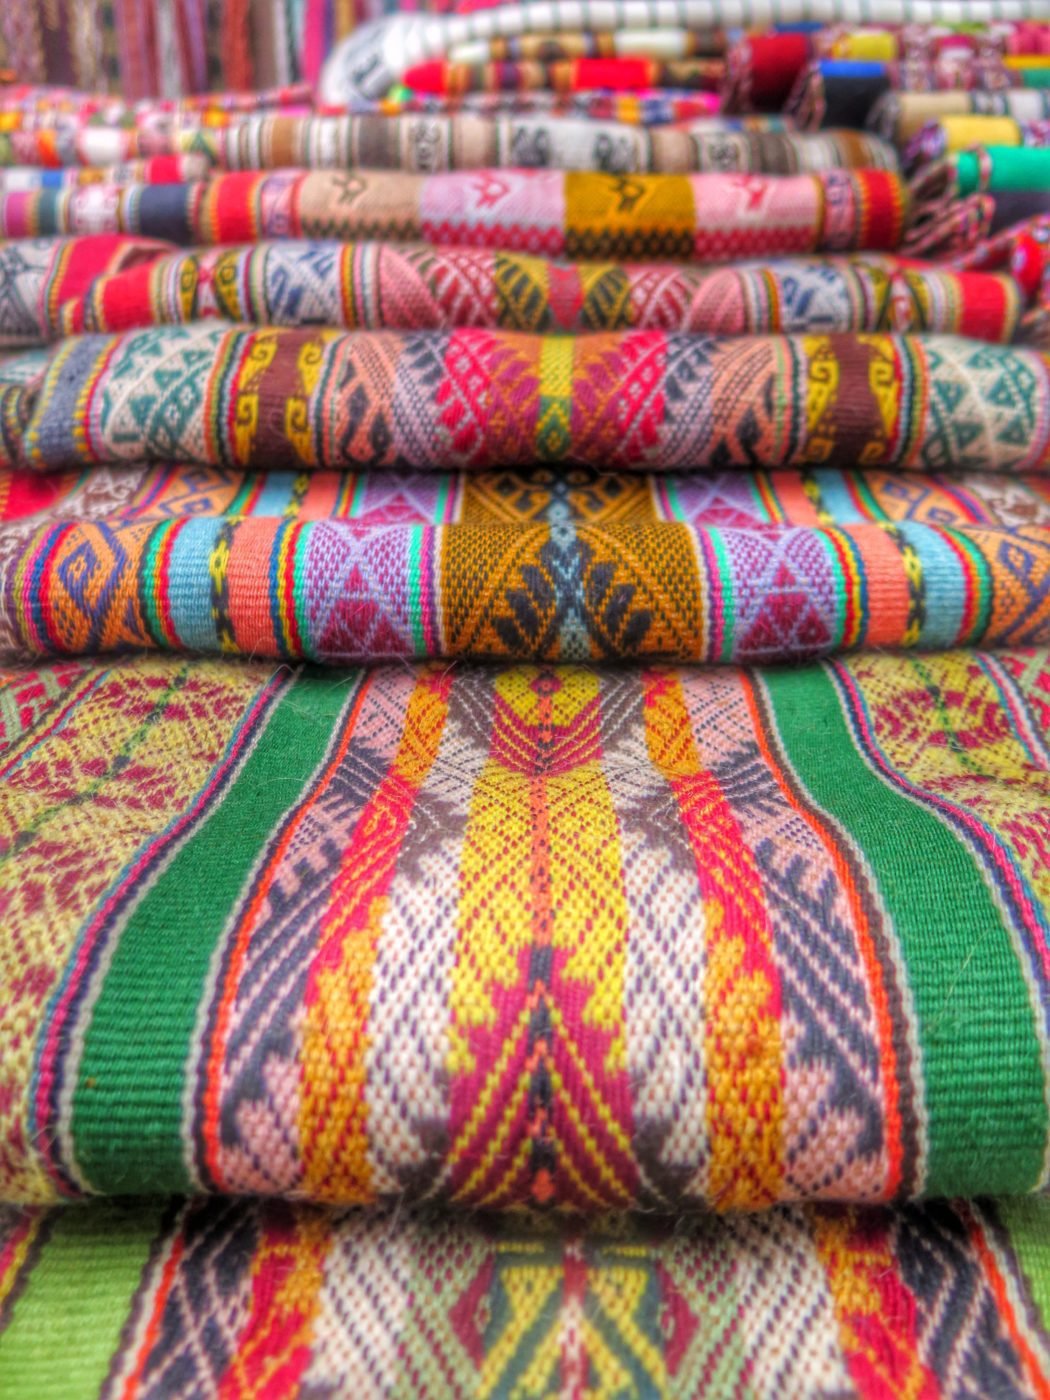 Peruvian textiles - Peru Adventure Tour